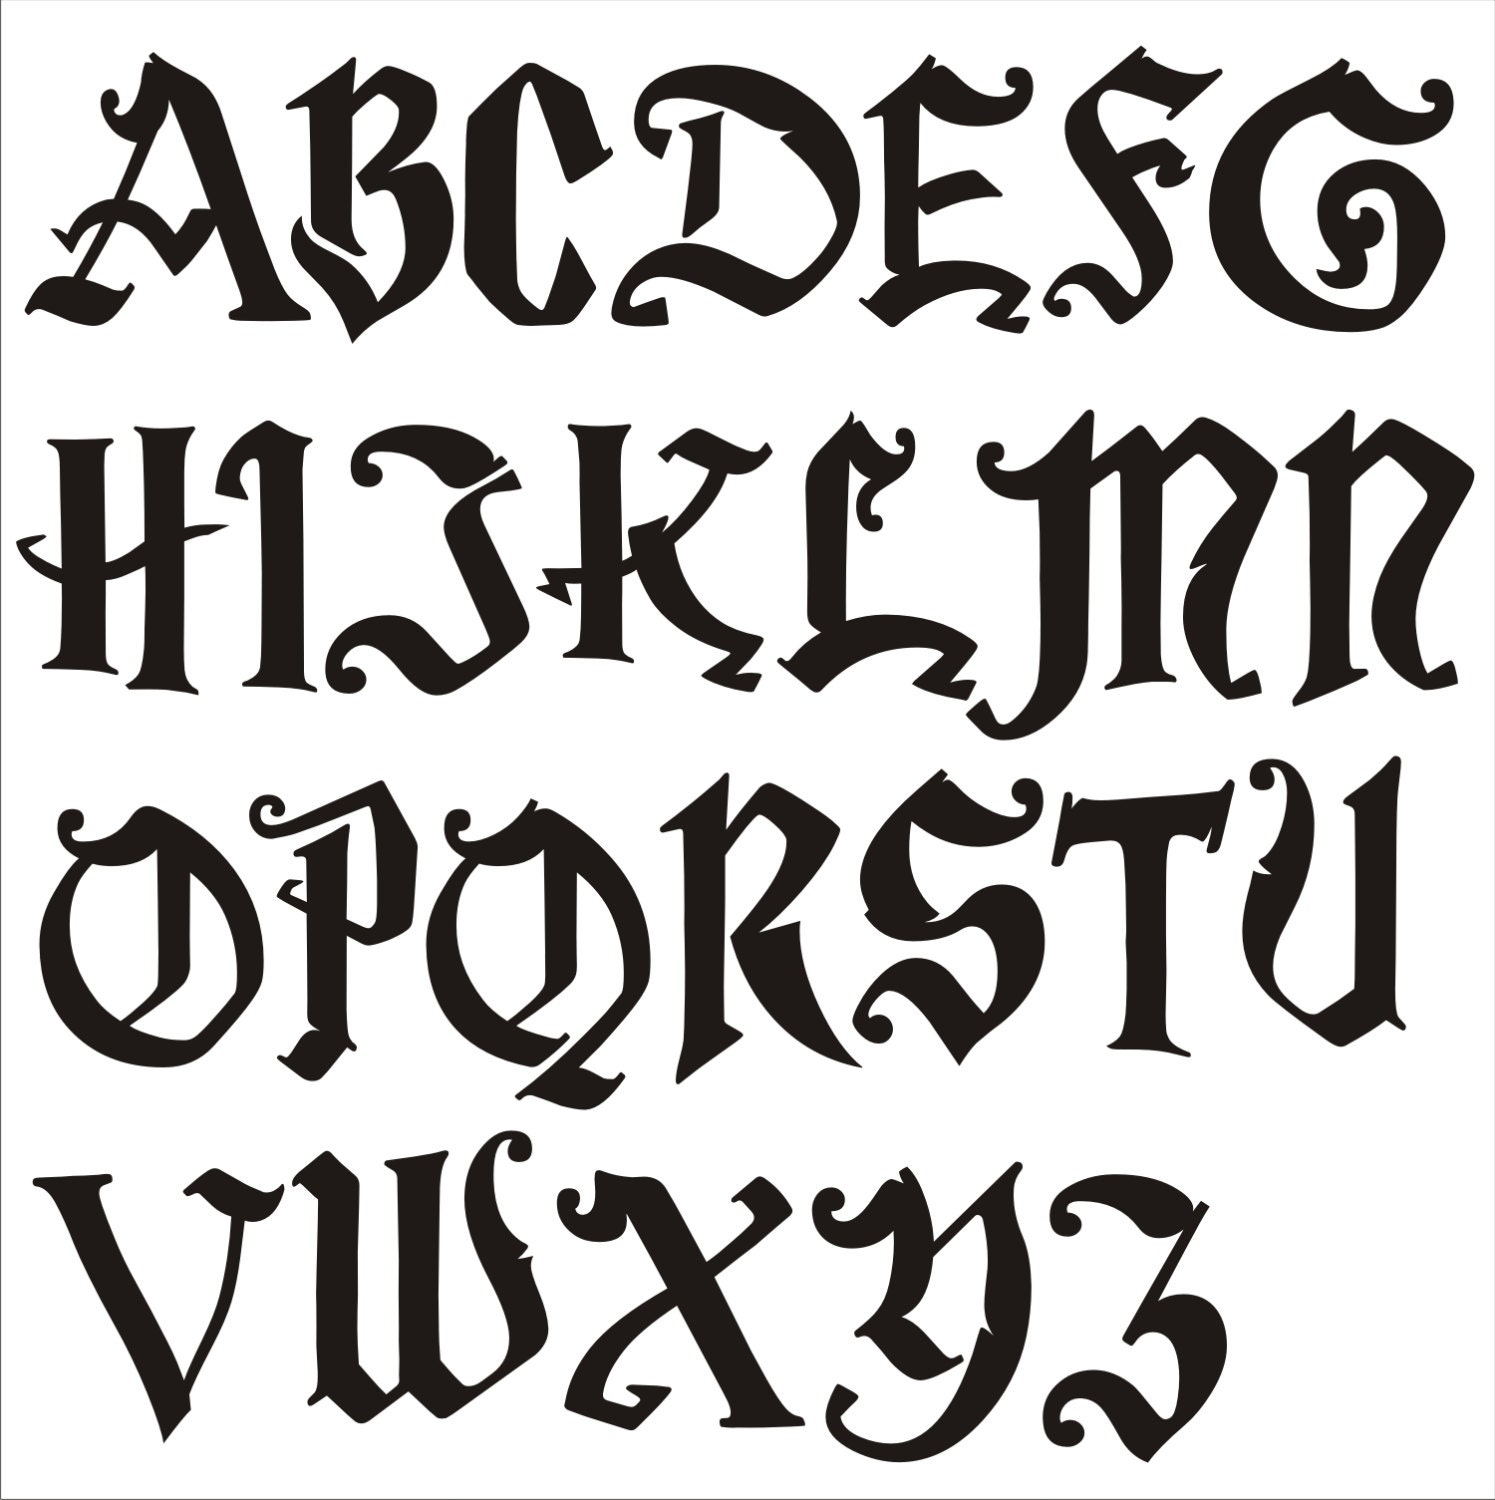  Eage Alphabet Letter Stencils 1 inch, 68 Pcs Reusable